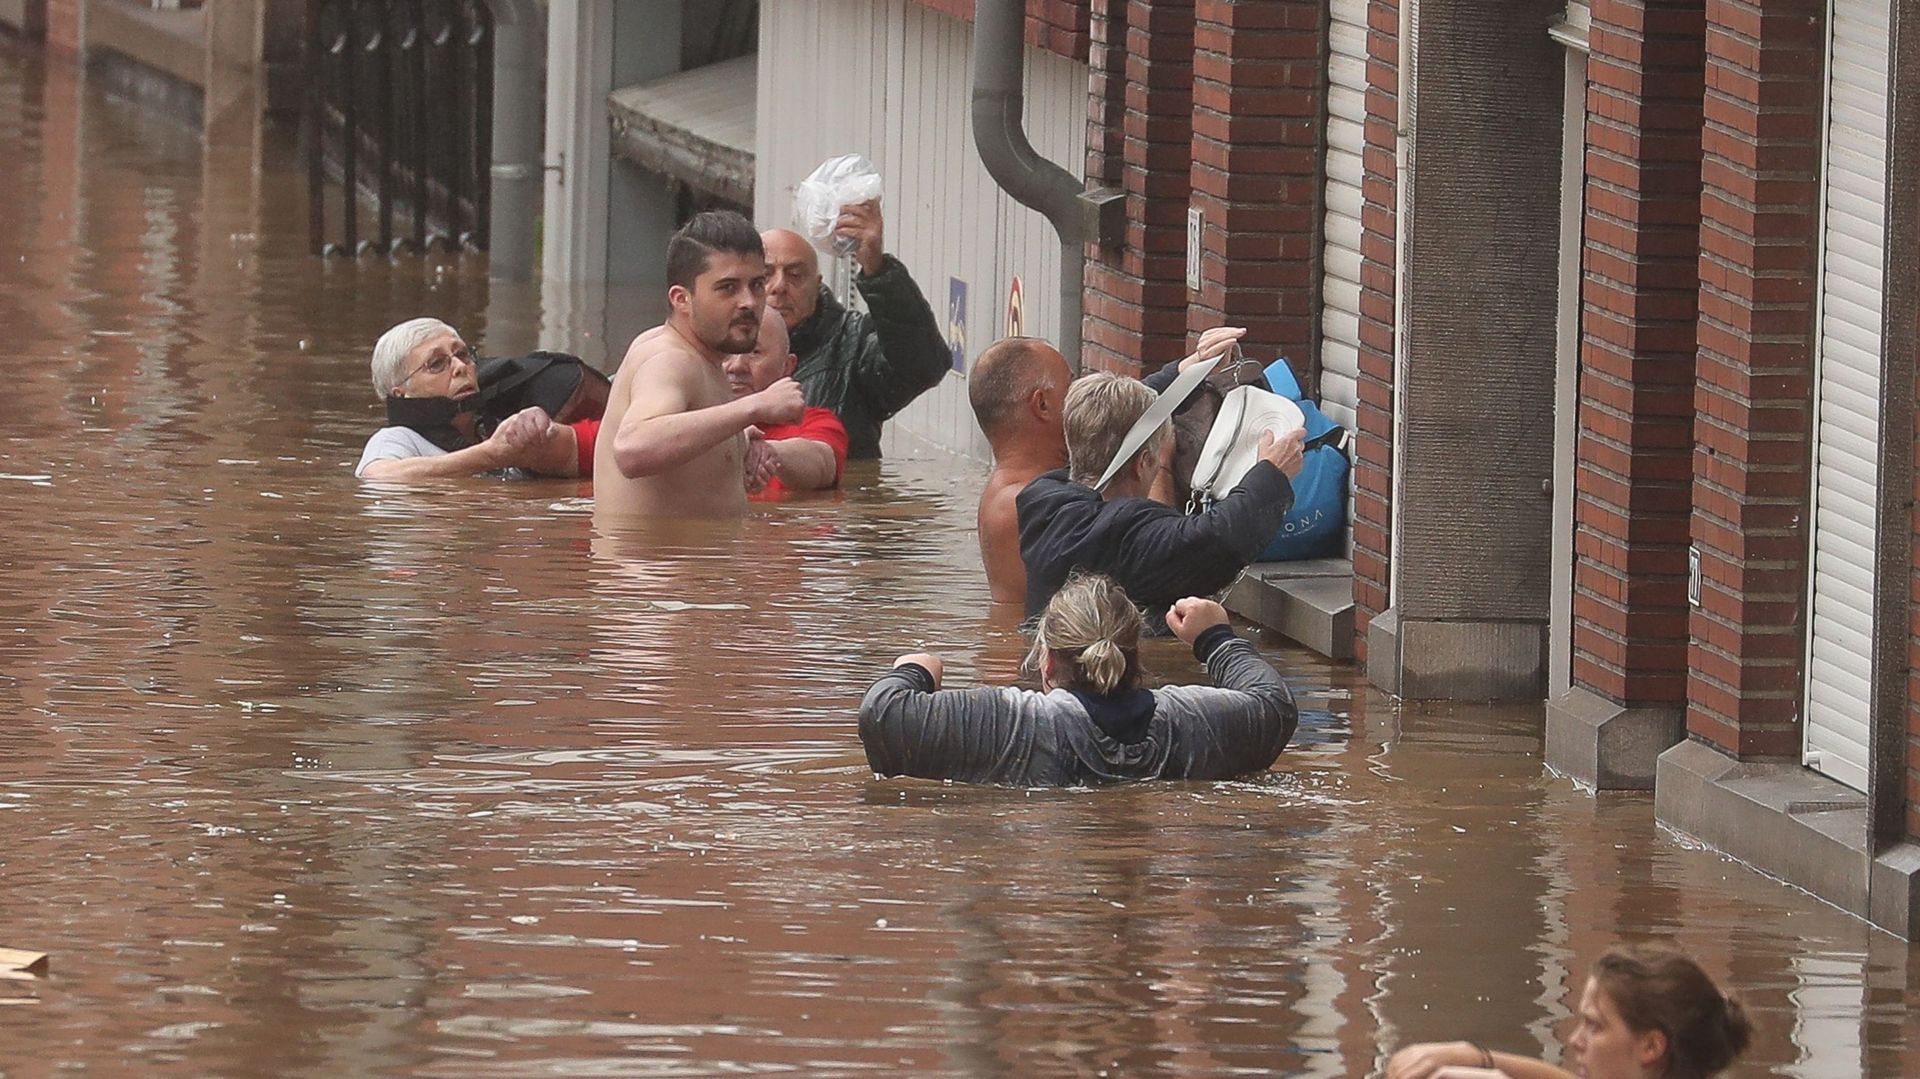 À Liège ce 15 juillet, l’eau est montée à des niveaux alarmants. Les riverains s’entraident.